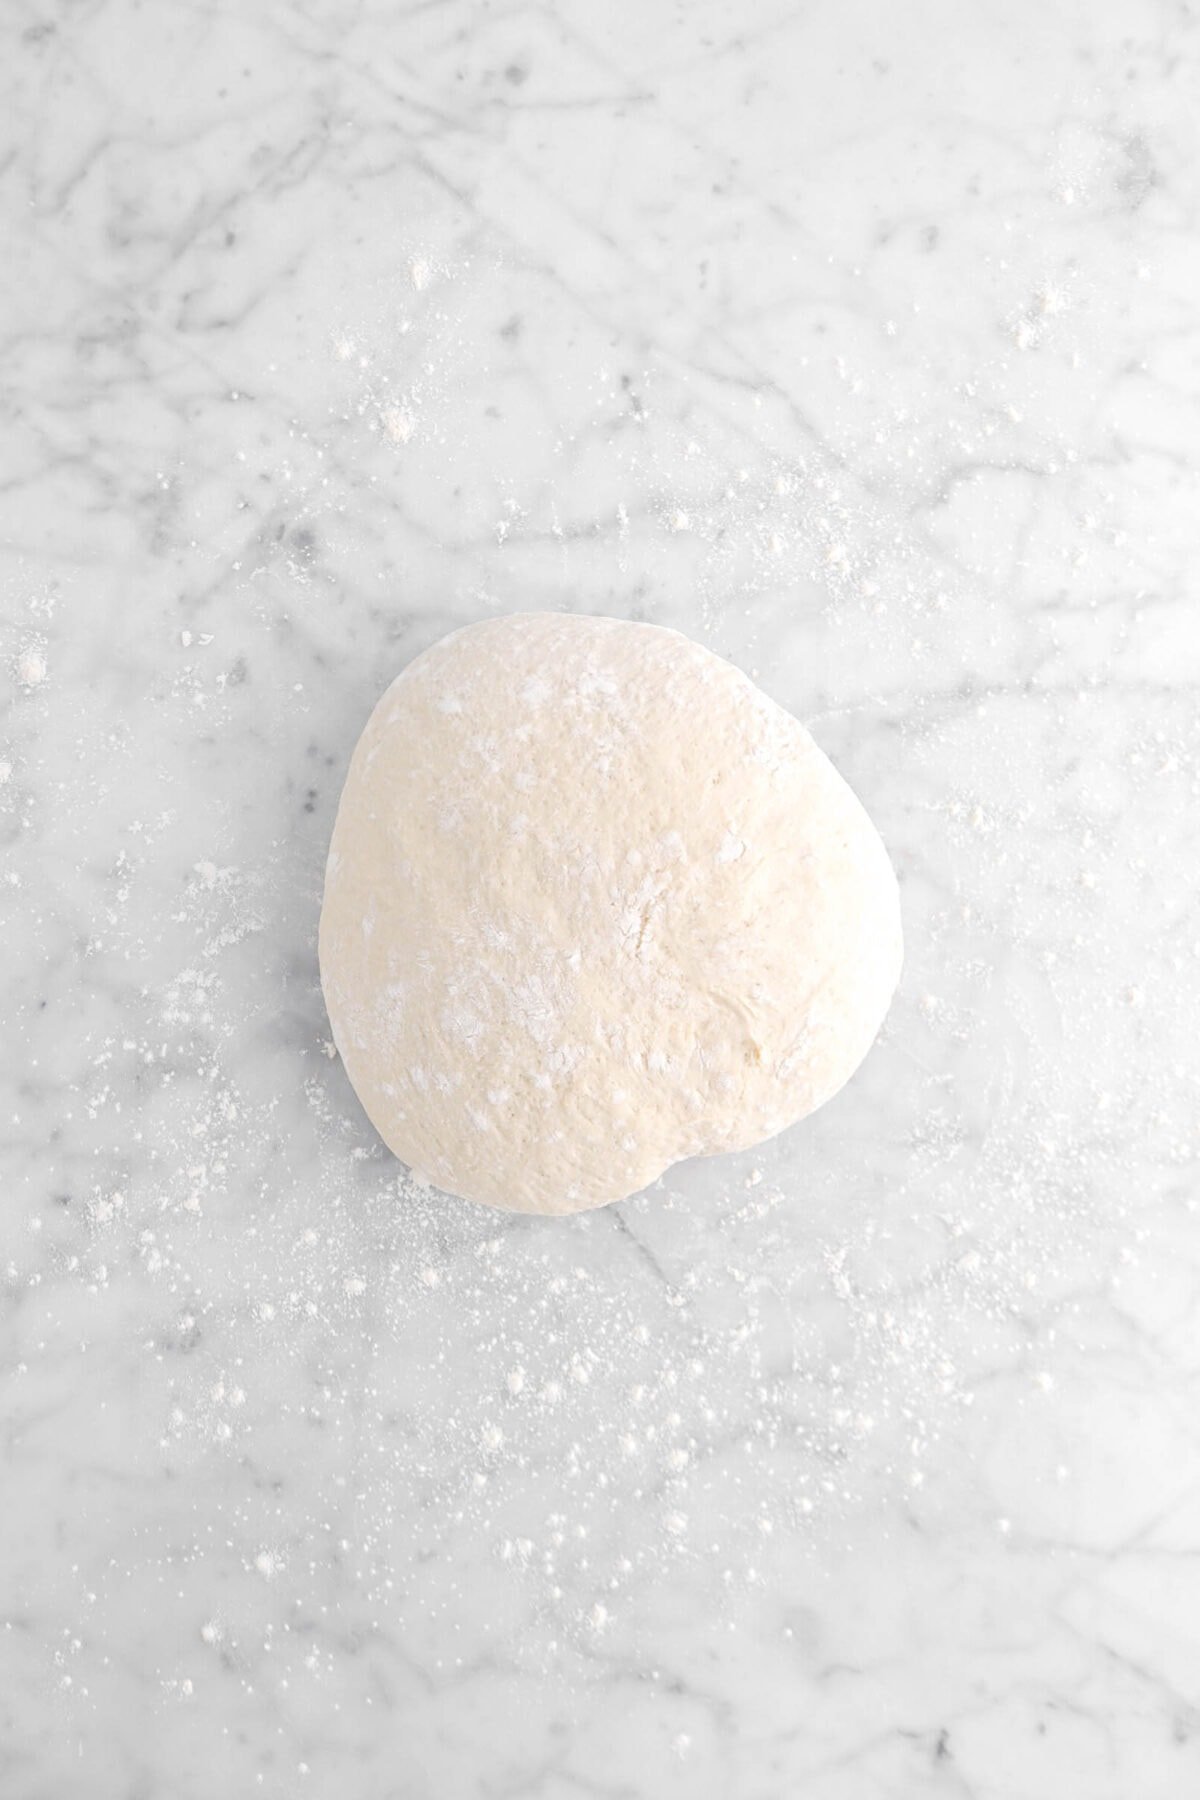 dough boule on floured surface